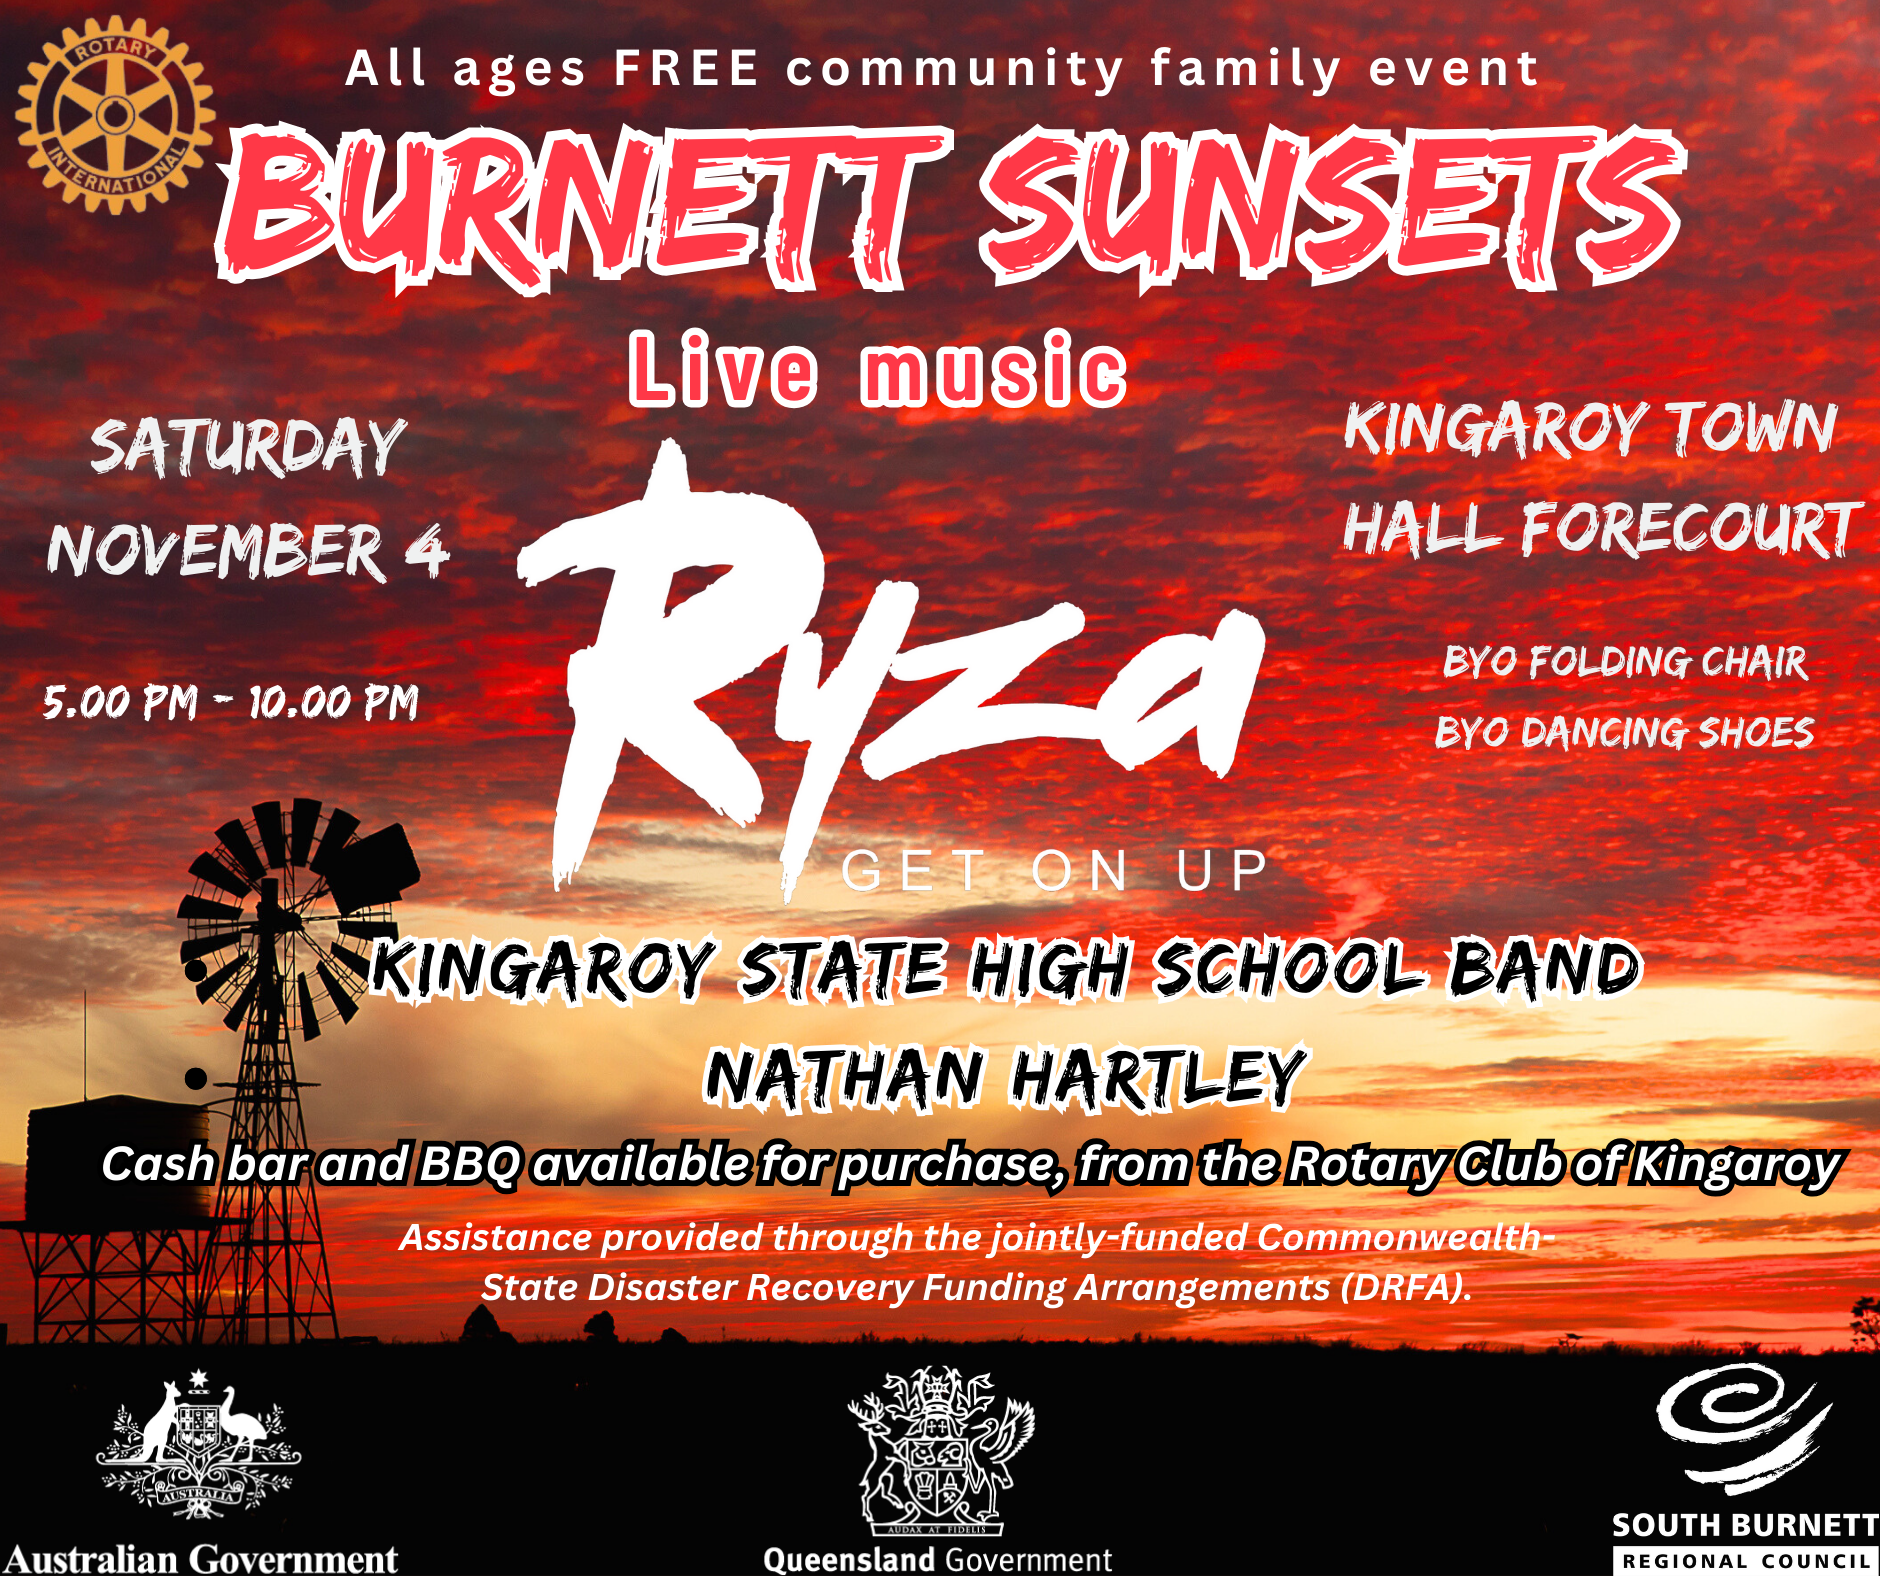 06 09 23 Burnett sunsets kingaroy forecourt 1